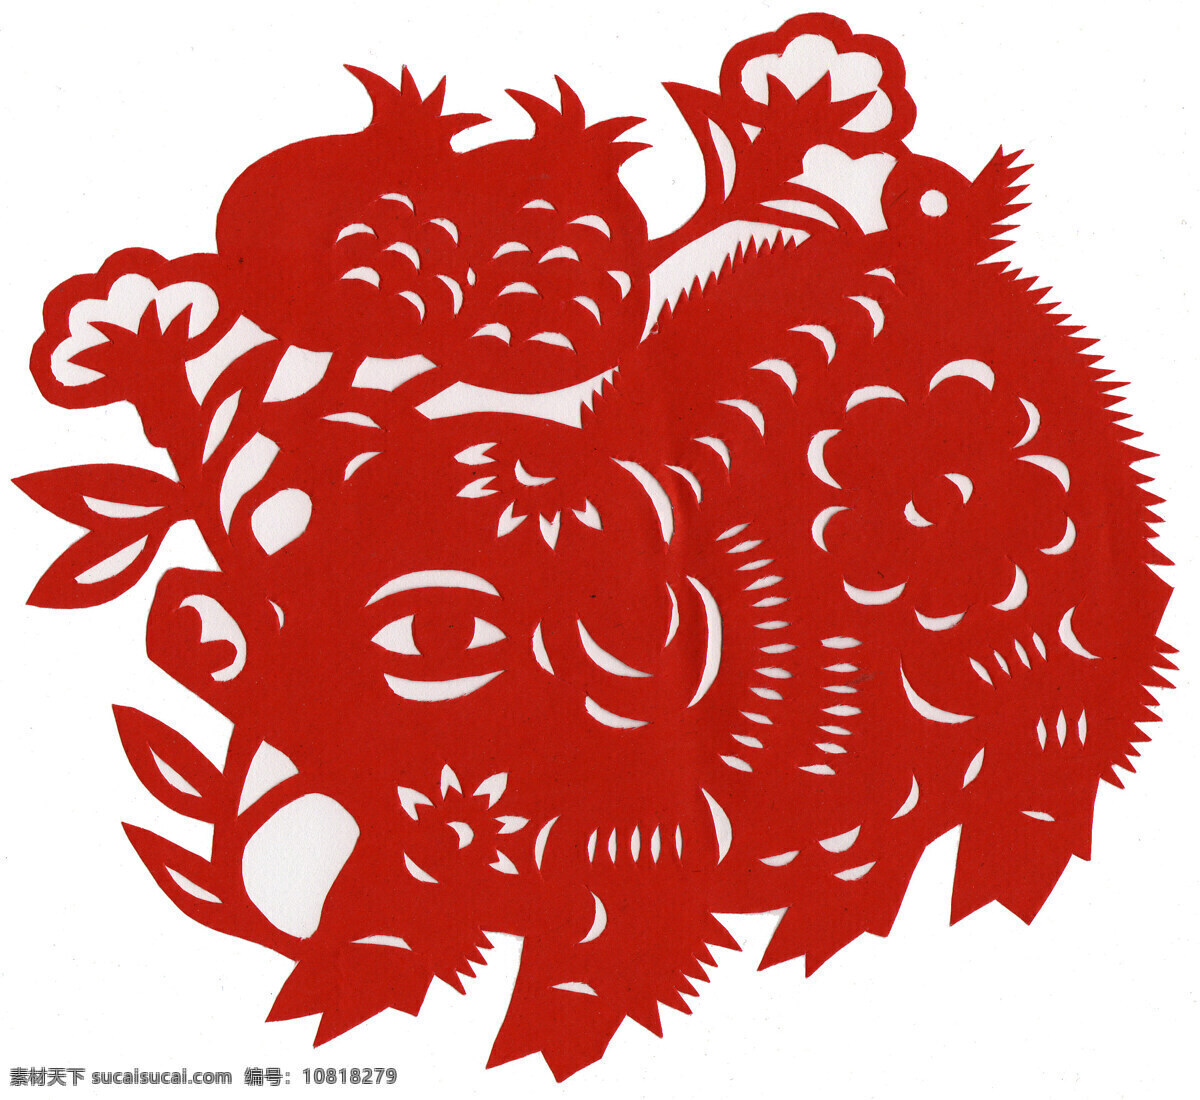 十二生肖 猪 剪纸 花纹装饰 中国传统文化 剪纸表现手法 传统文化 文化艺术